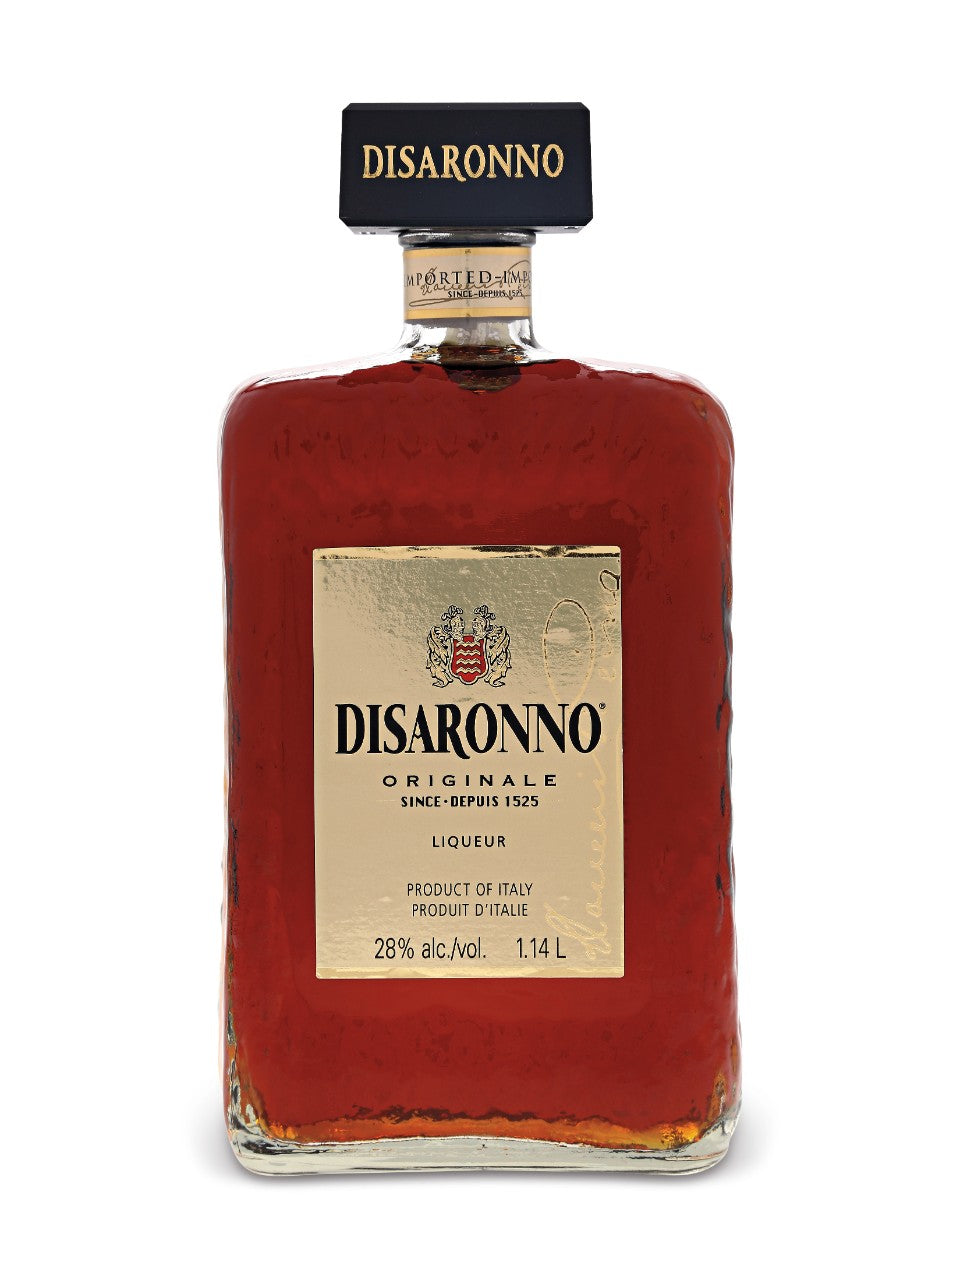 Disaronno Originale Amaretto 1140 mL bottle